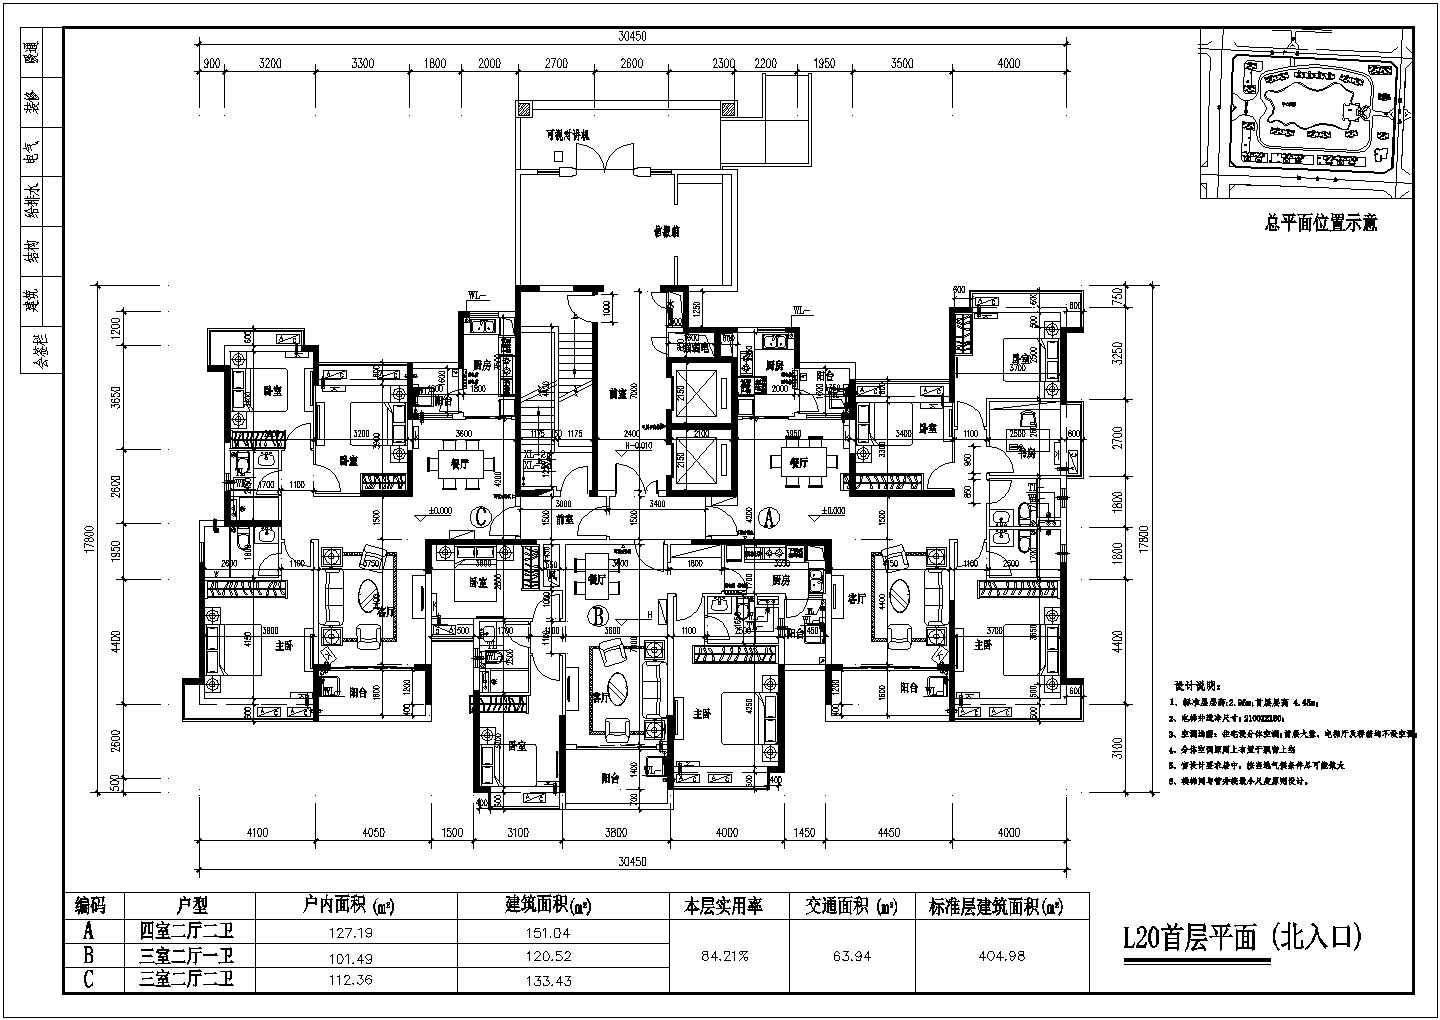 某大型住宅小区总平面规划方案及部分户型图